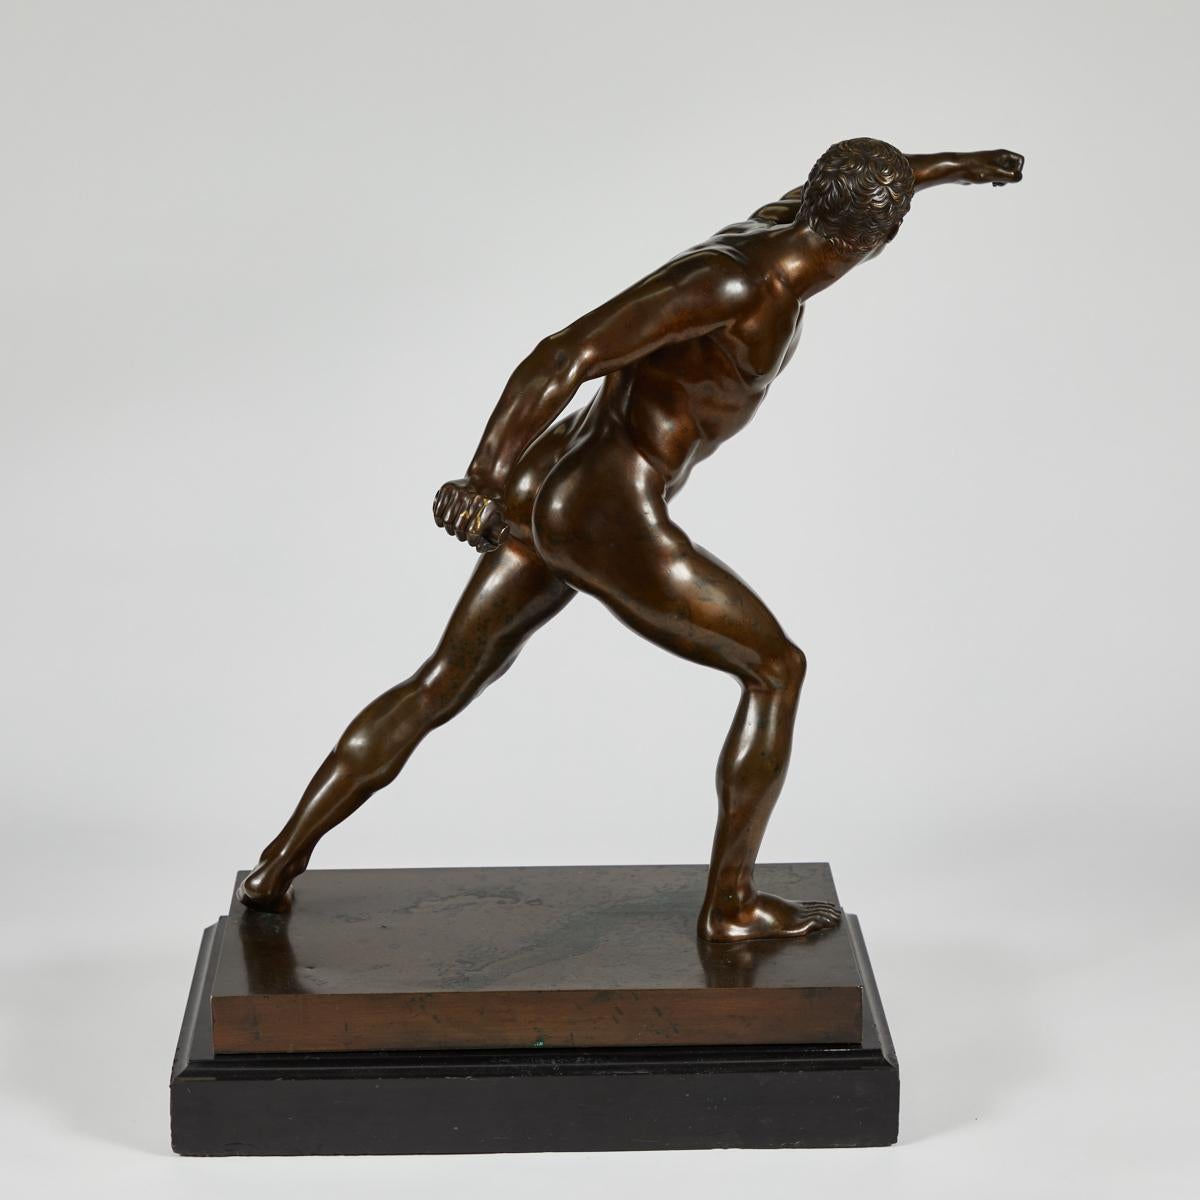 Dynamique sculpture française en bronze du XIXe siècle représentant un guerrier grec en action. La représentation d'un physique athlétique d'un naturalisme exquis, la figure est dramatiquement saisie en pleine action.  La sculpture est montée sur un